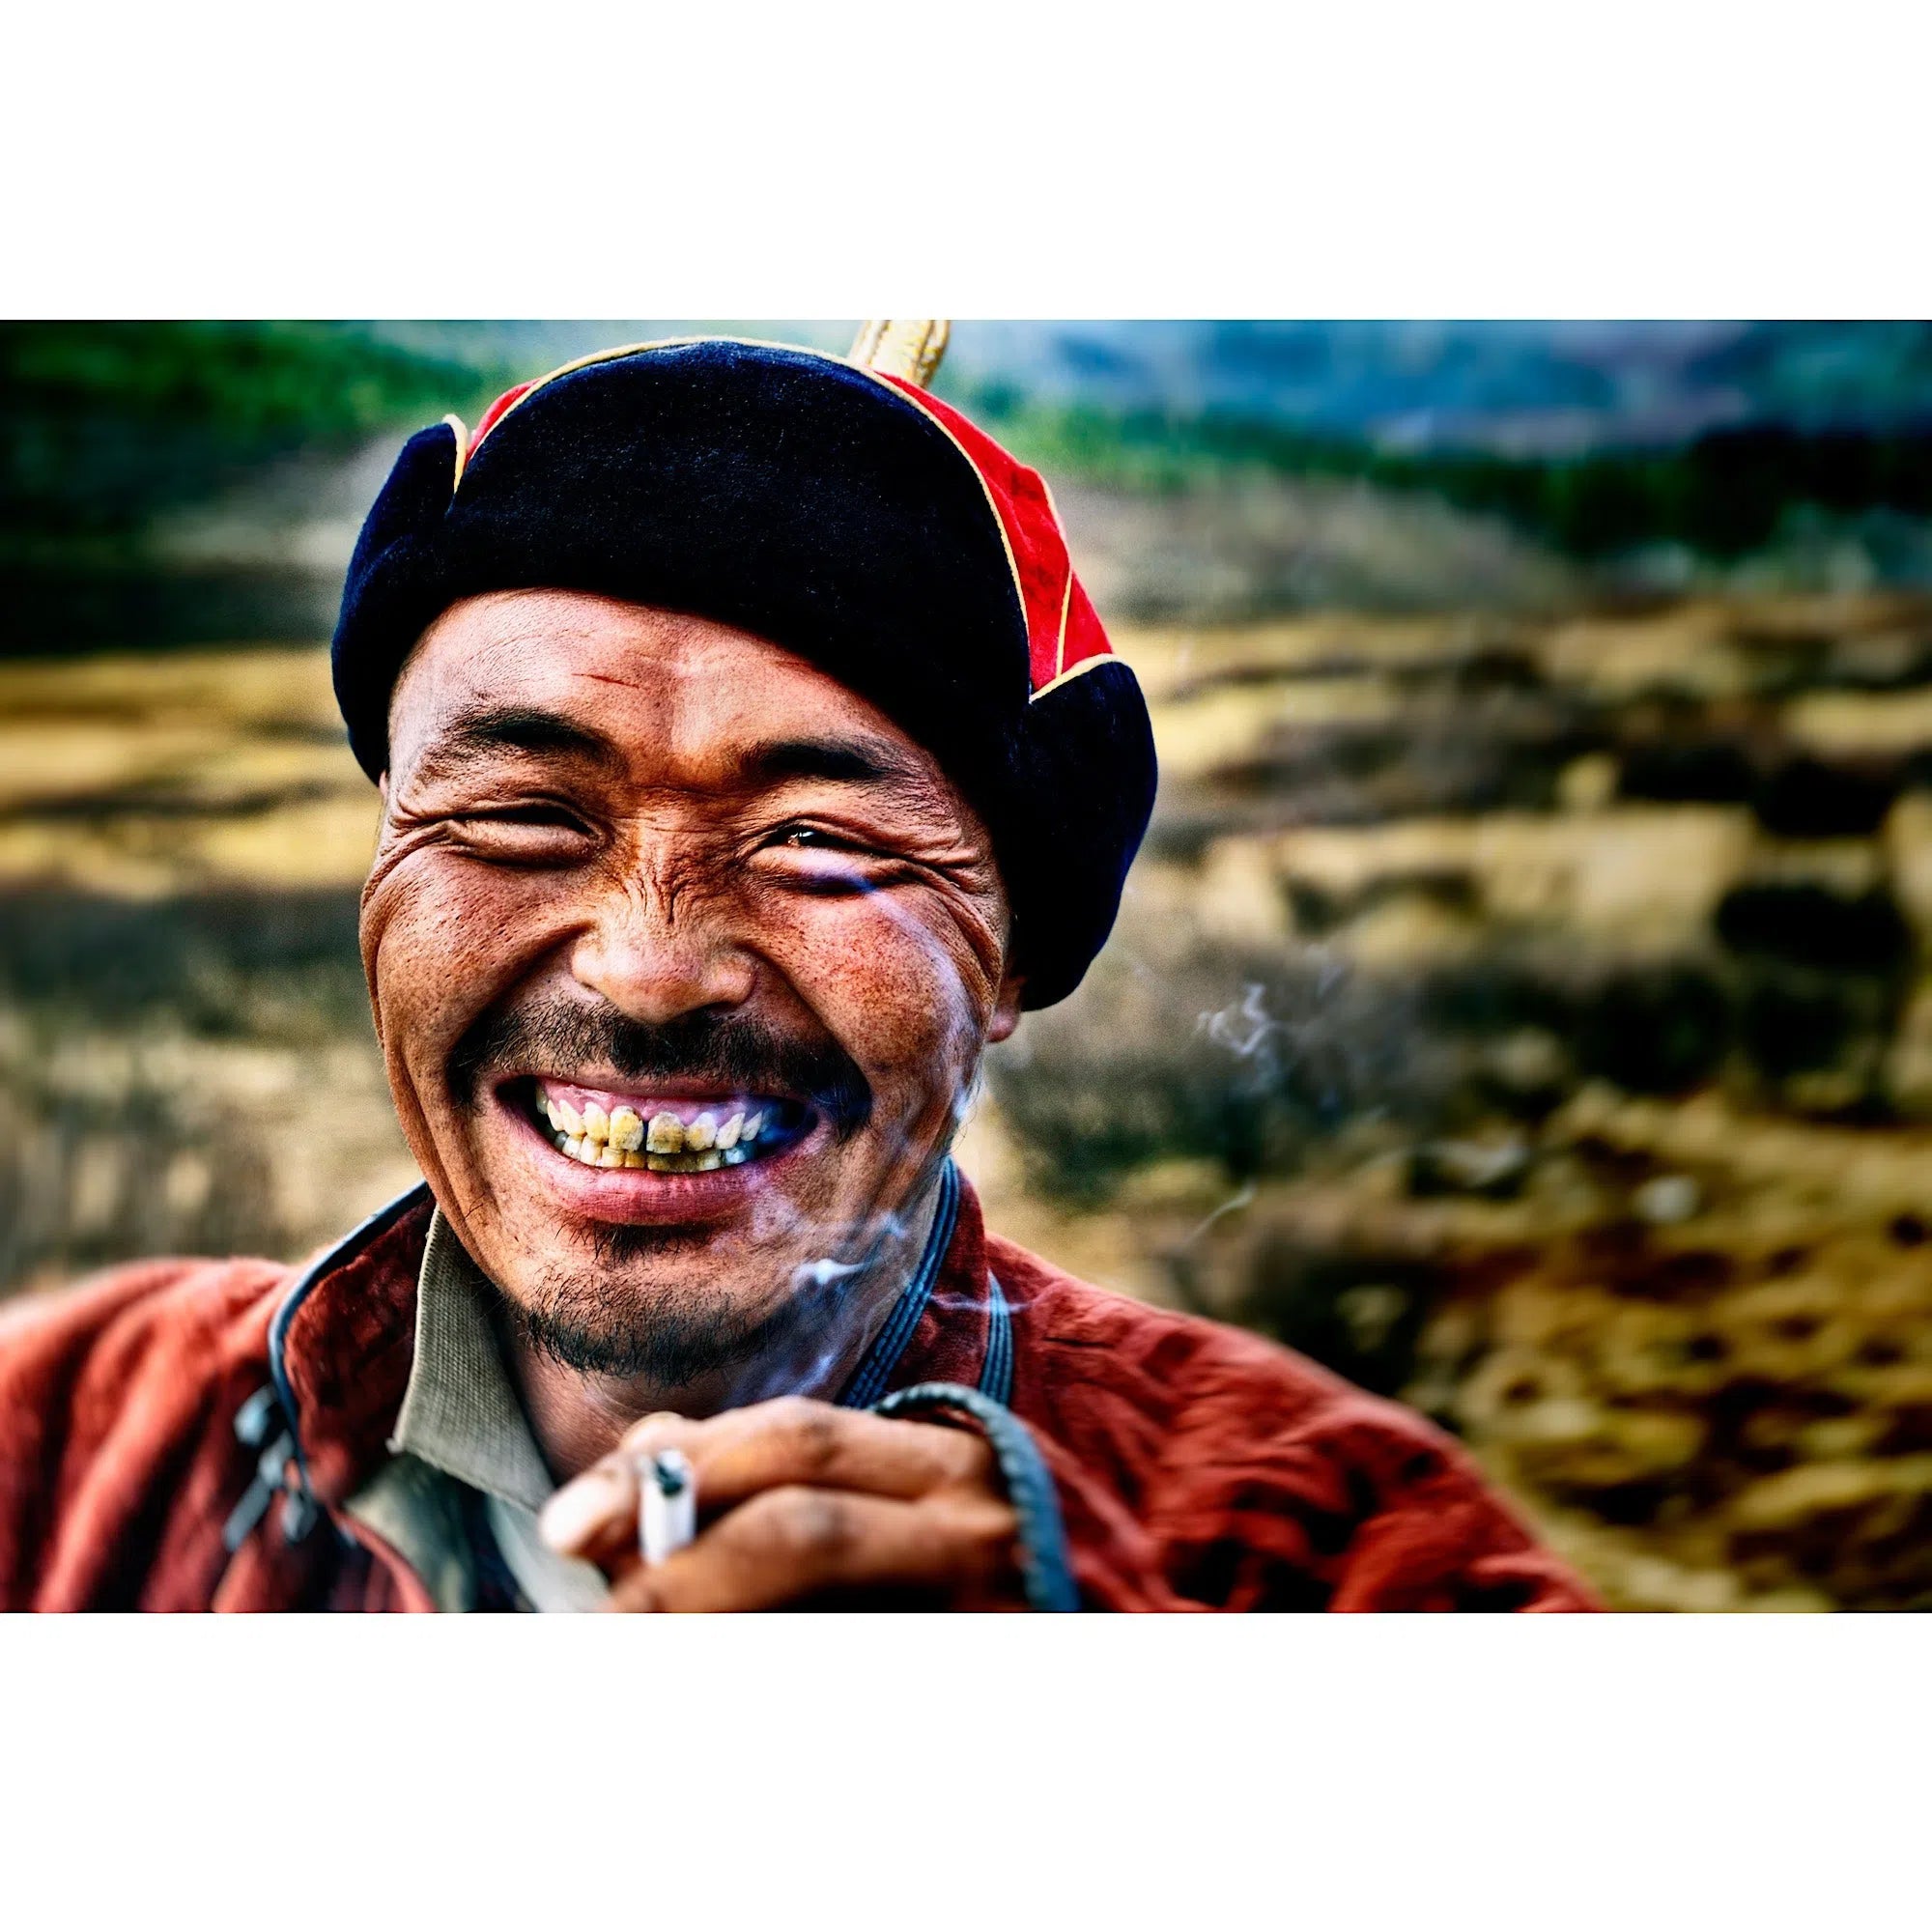 Mongole souriant en fumant sa cigarette-Imagesdartistes